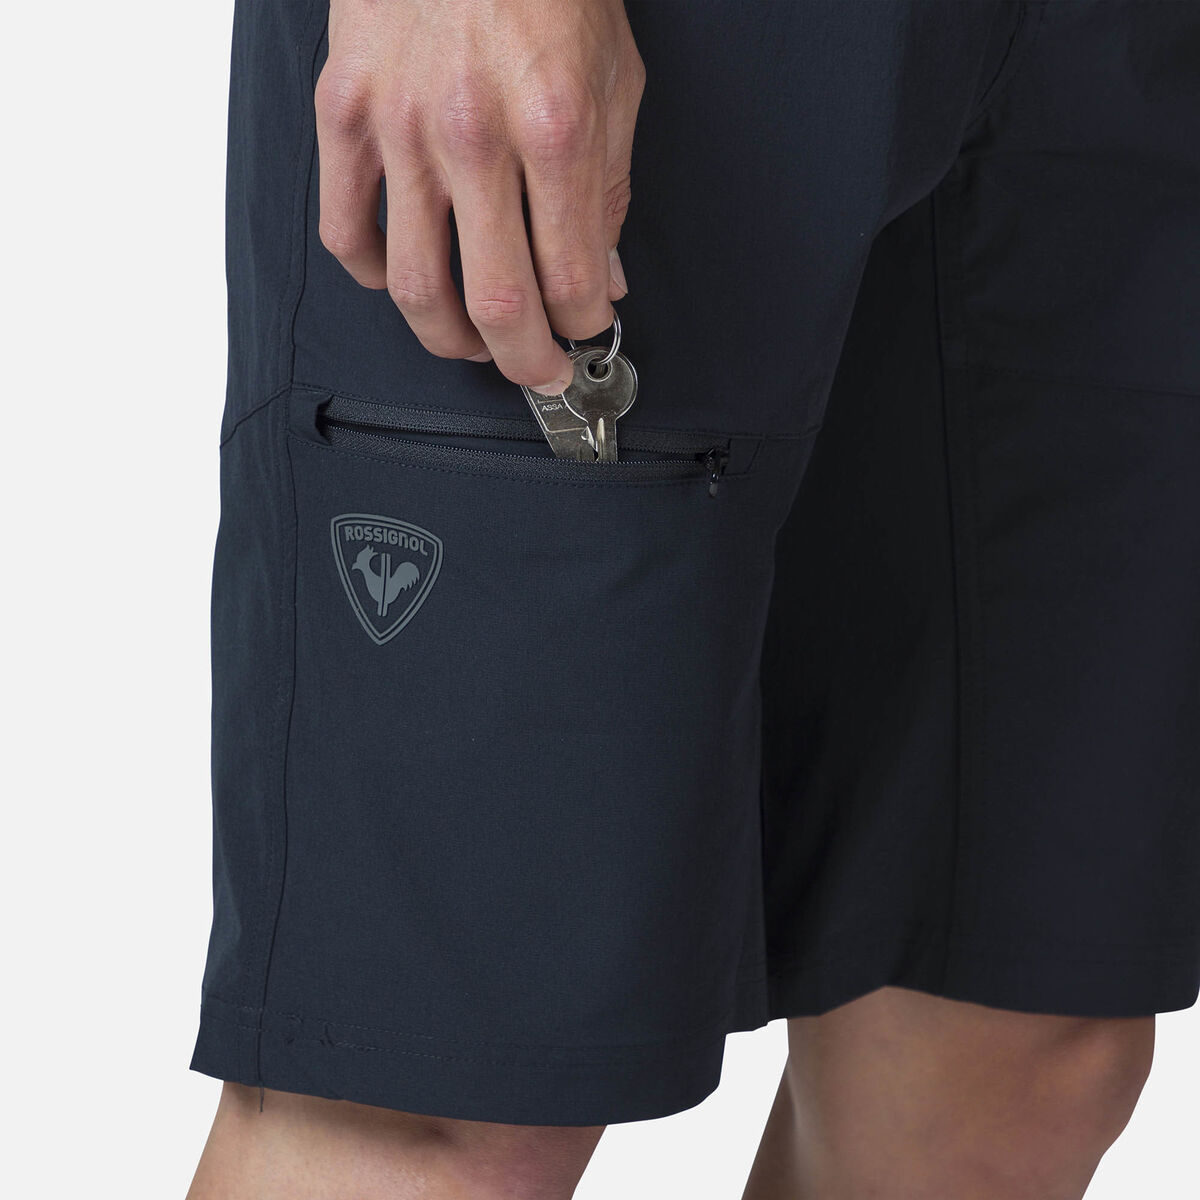 Active Cargo-Shorts für Herren